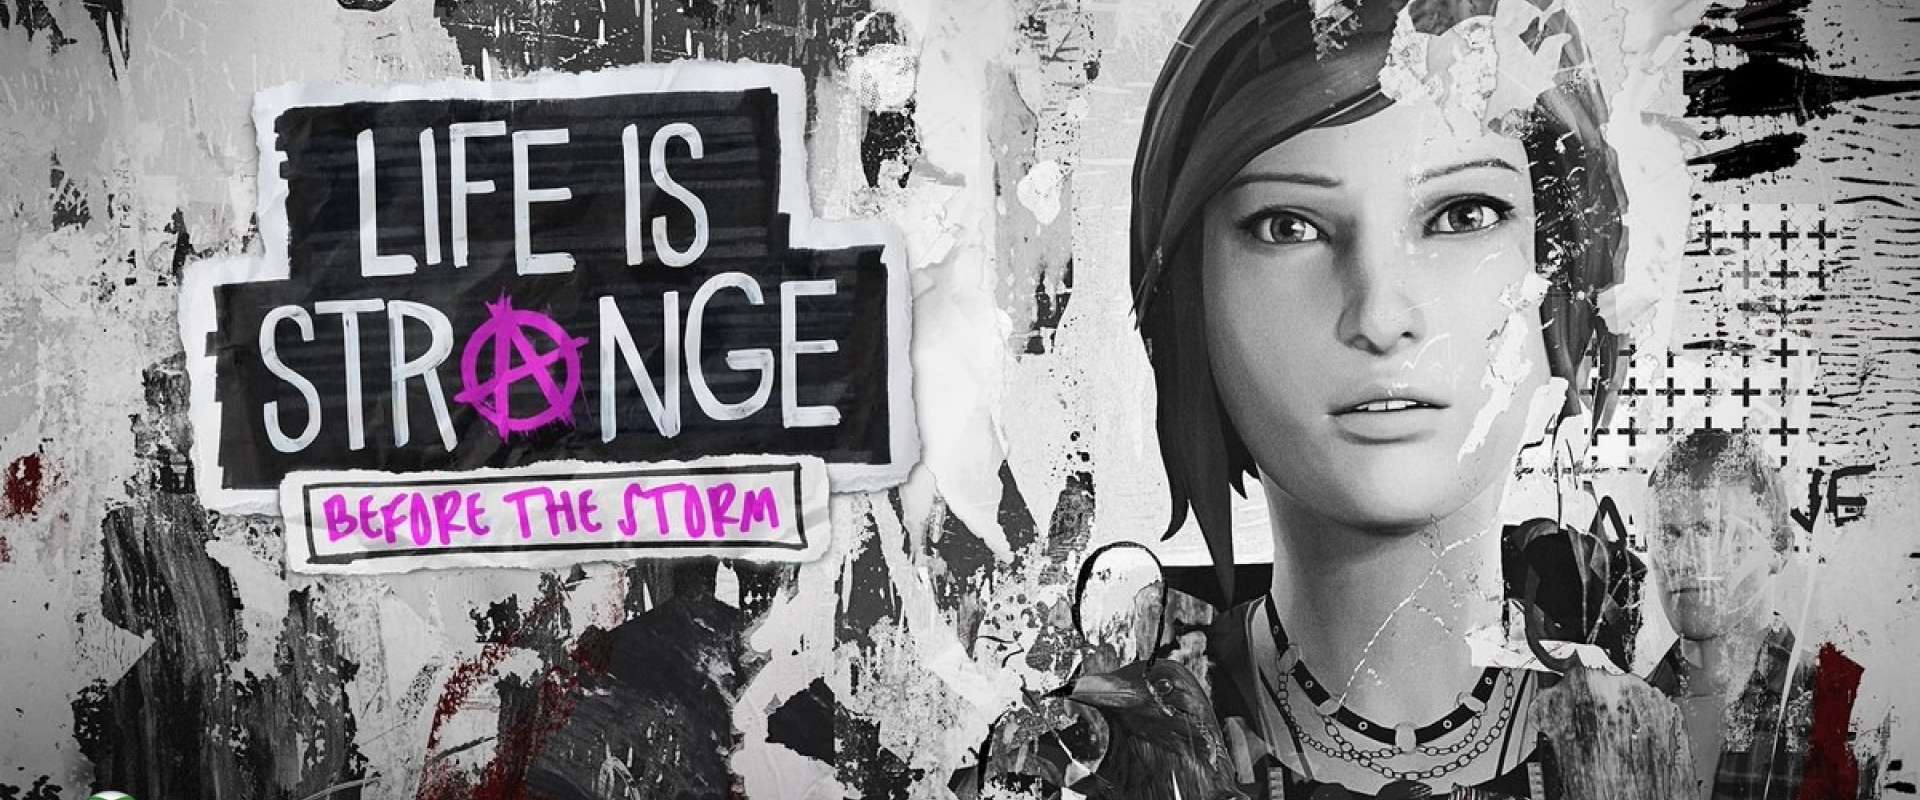 Life is Strange: Before the Storm - Ep. 1 desenvolve personagens com pressa